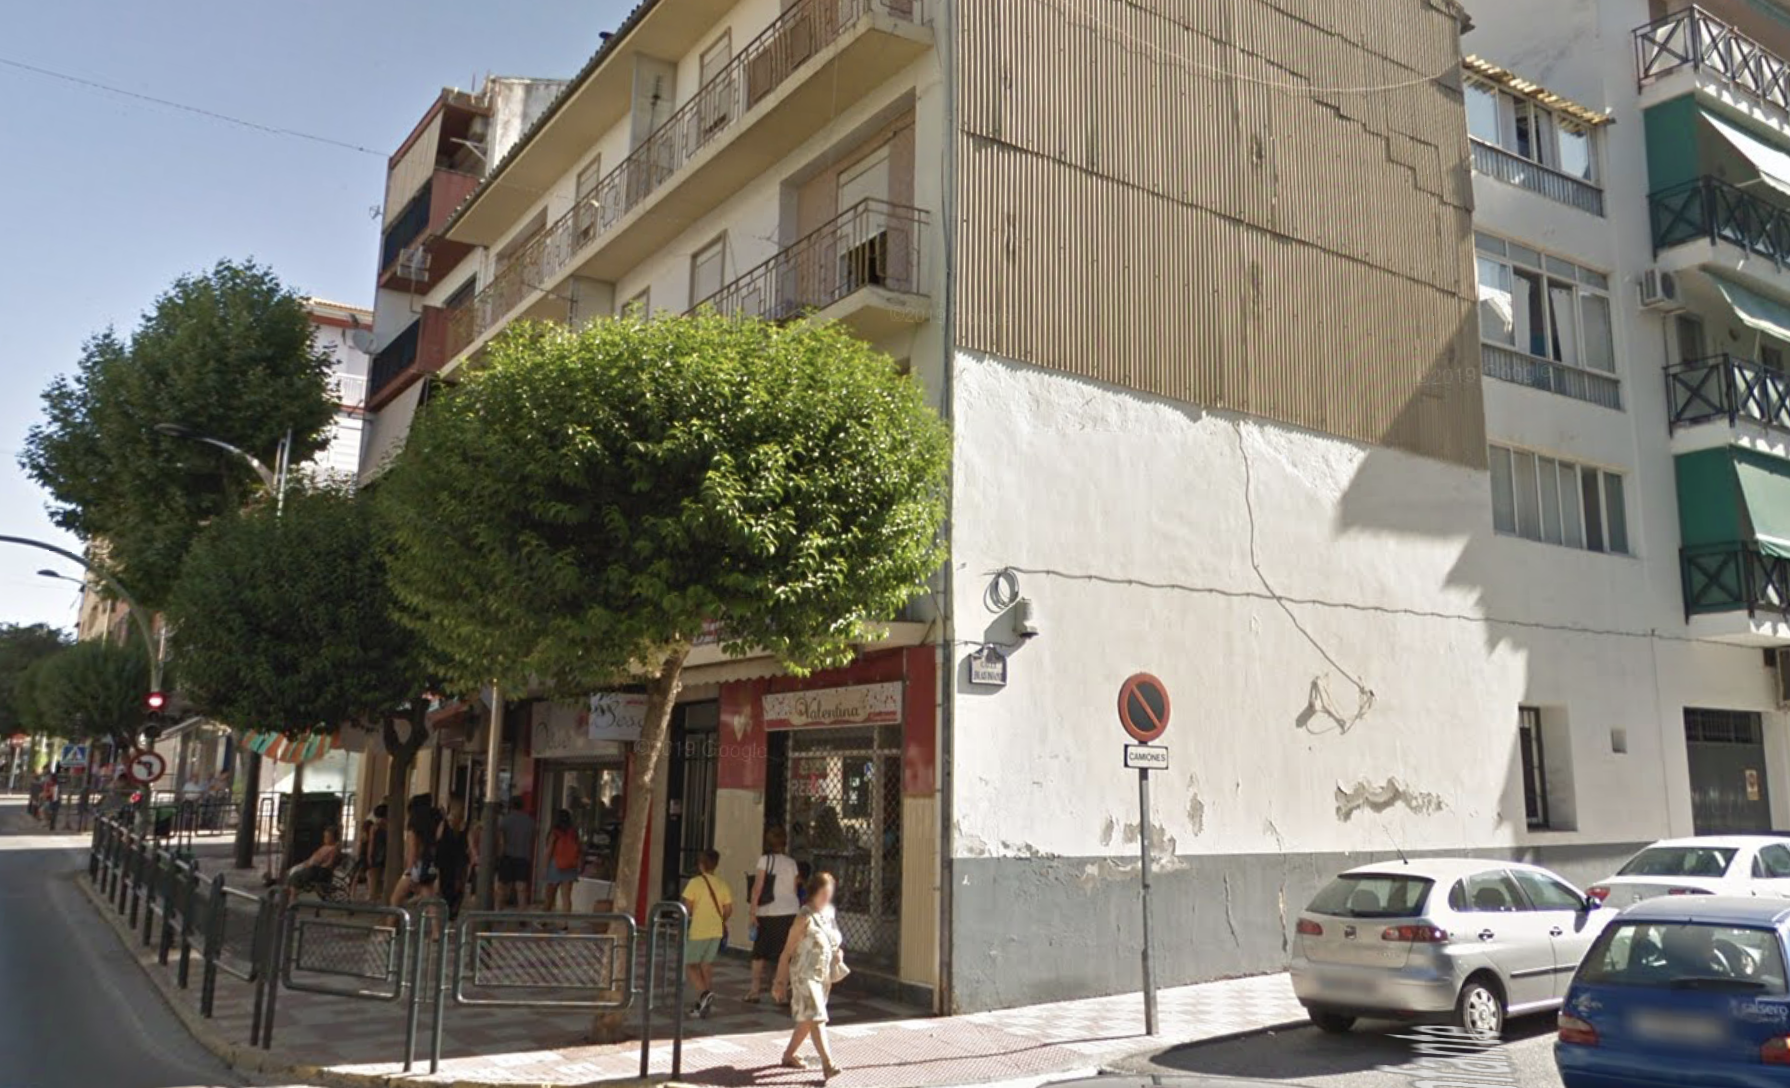 Inmueble en Alcalá la Real donde se ha producido el incendio, en una imagen de Google Maps.